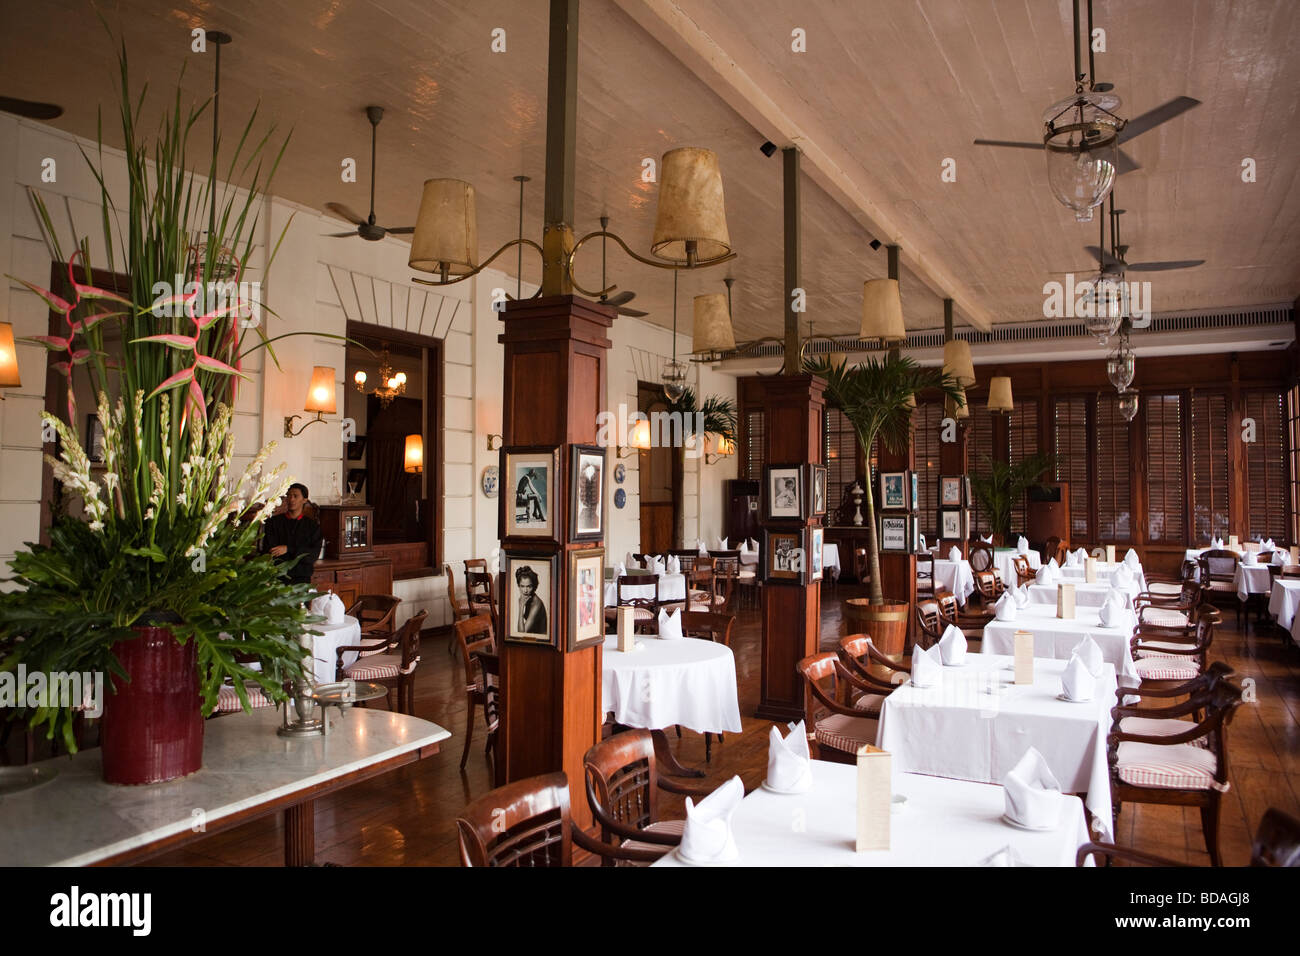 Restaurante colonial fotografías e imágenes de alta resolución - Alamy